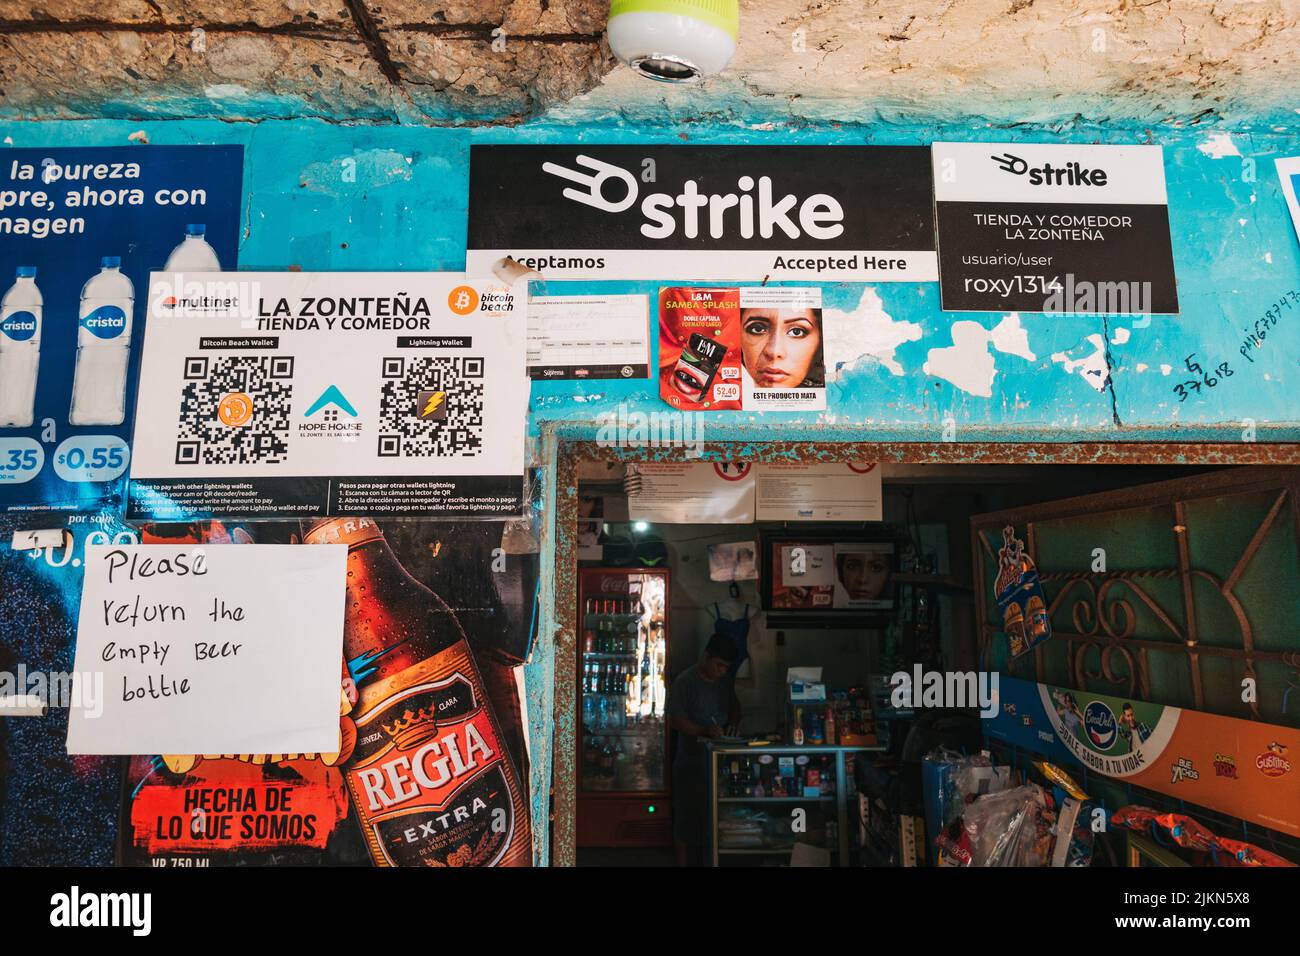 Bitcoin Lightning Network und Strike Payments QR-Code-Beschilderung in einem Geschäft in der Stadt El Zonte, auch bekannt als Bitcoin Beach, El Salvador Stockfoto